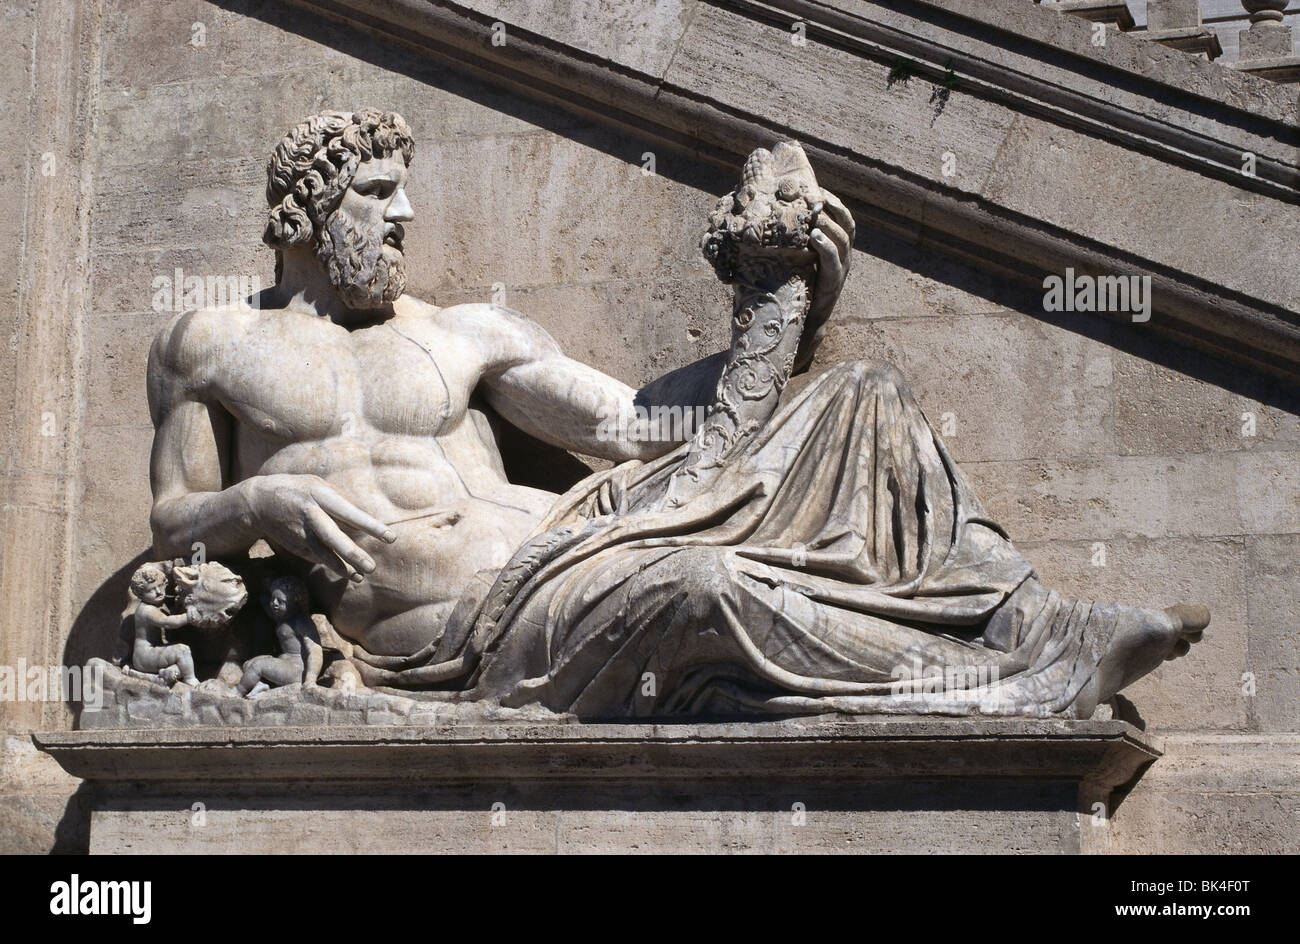 Antica scultura romana della personificazione del fiume Tevere nella Piazza del Campidoglio, Roma Italia Foto Stock